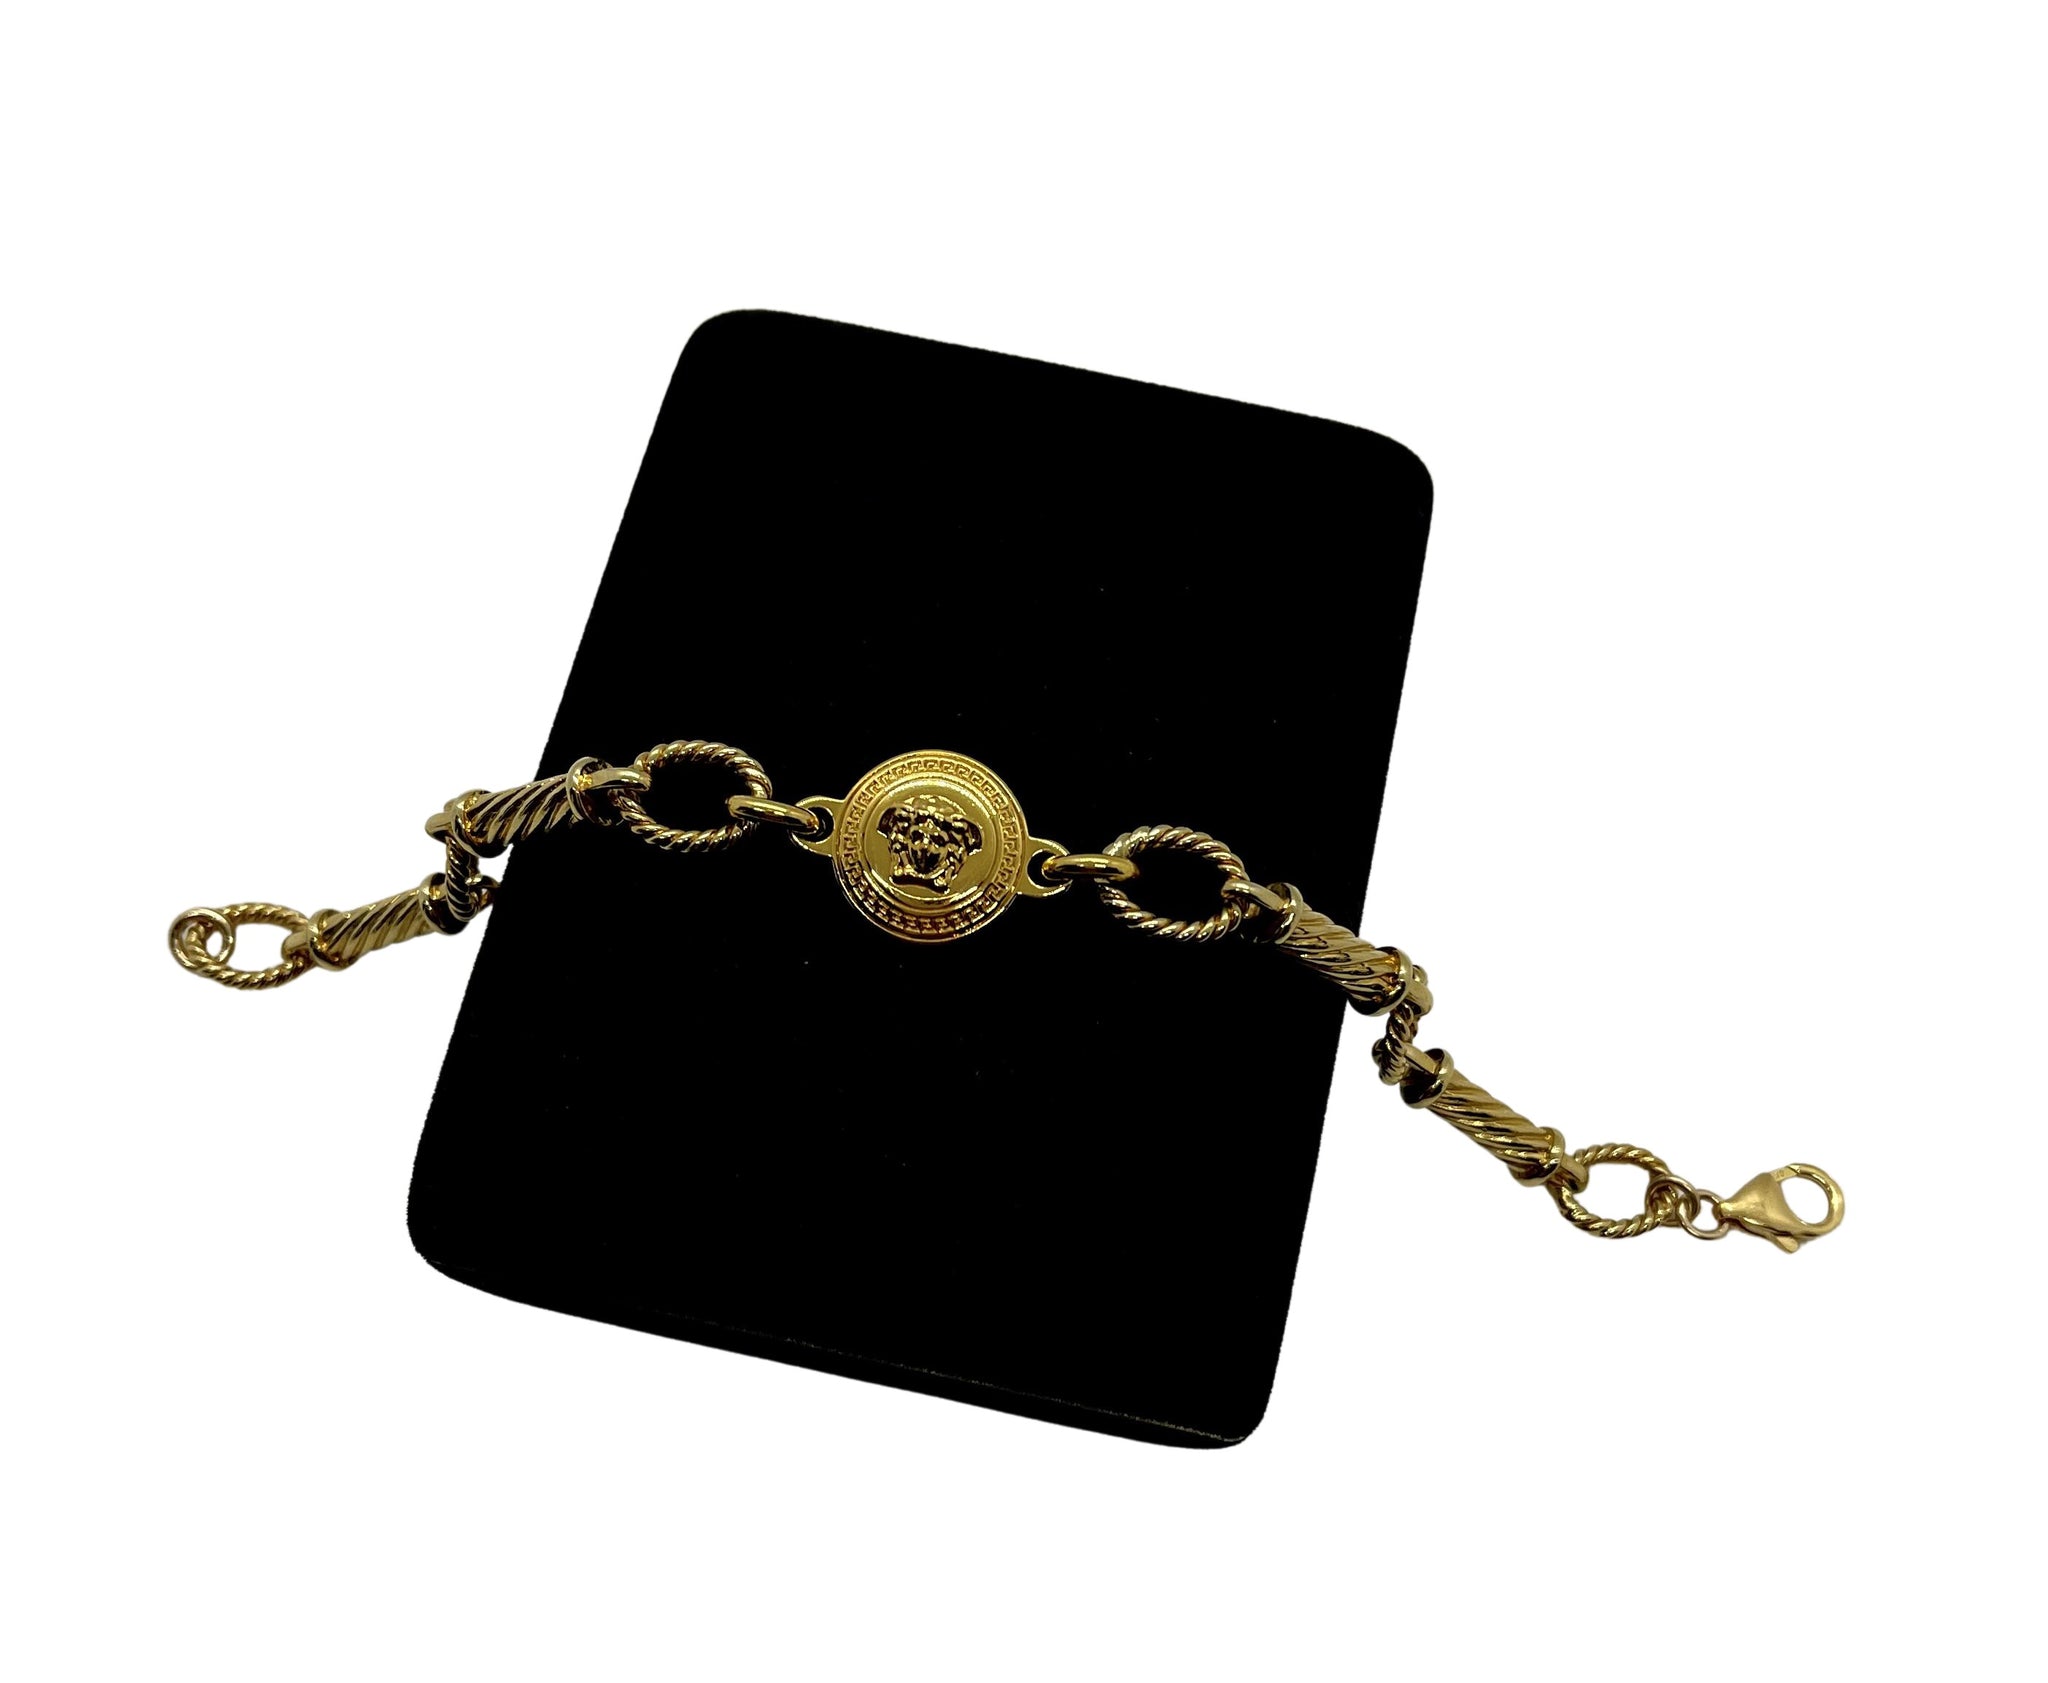 Gianni Versace - Medusa Coin - Bracelet in Japan